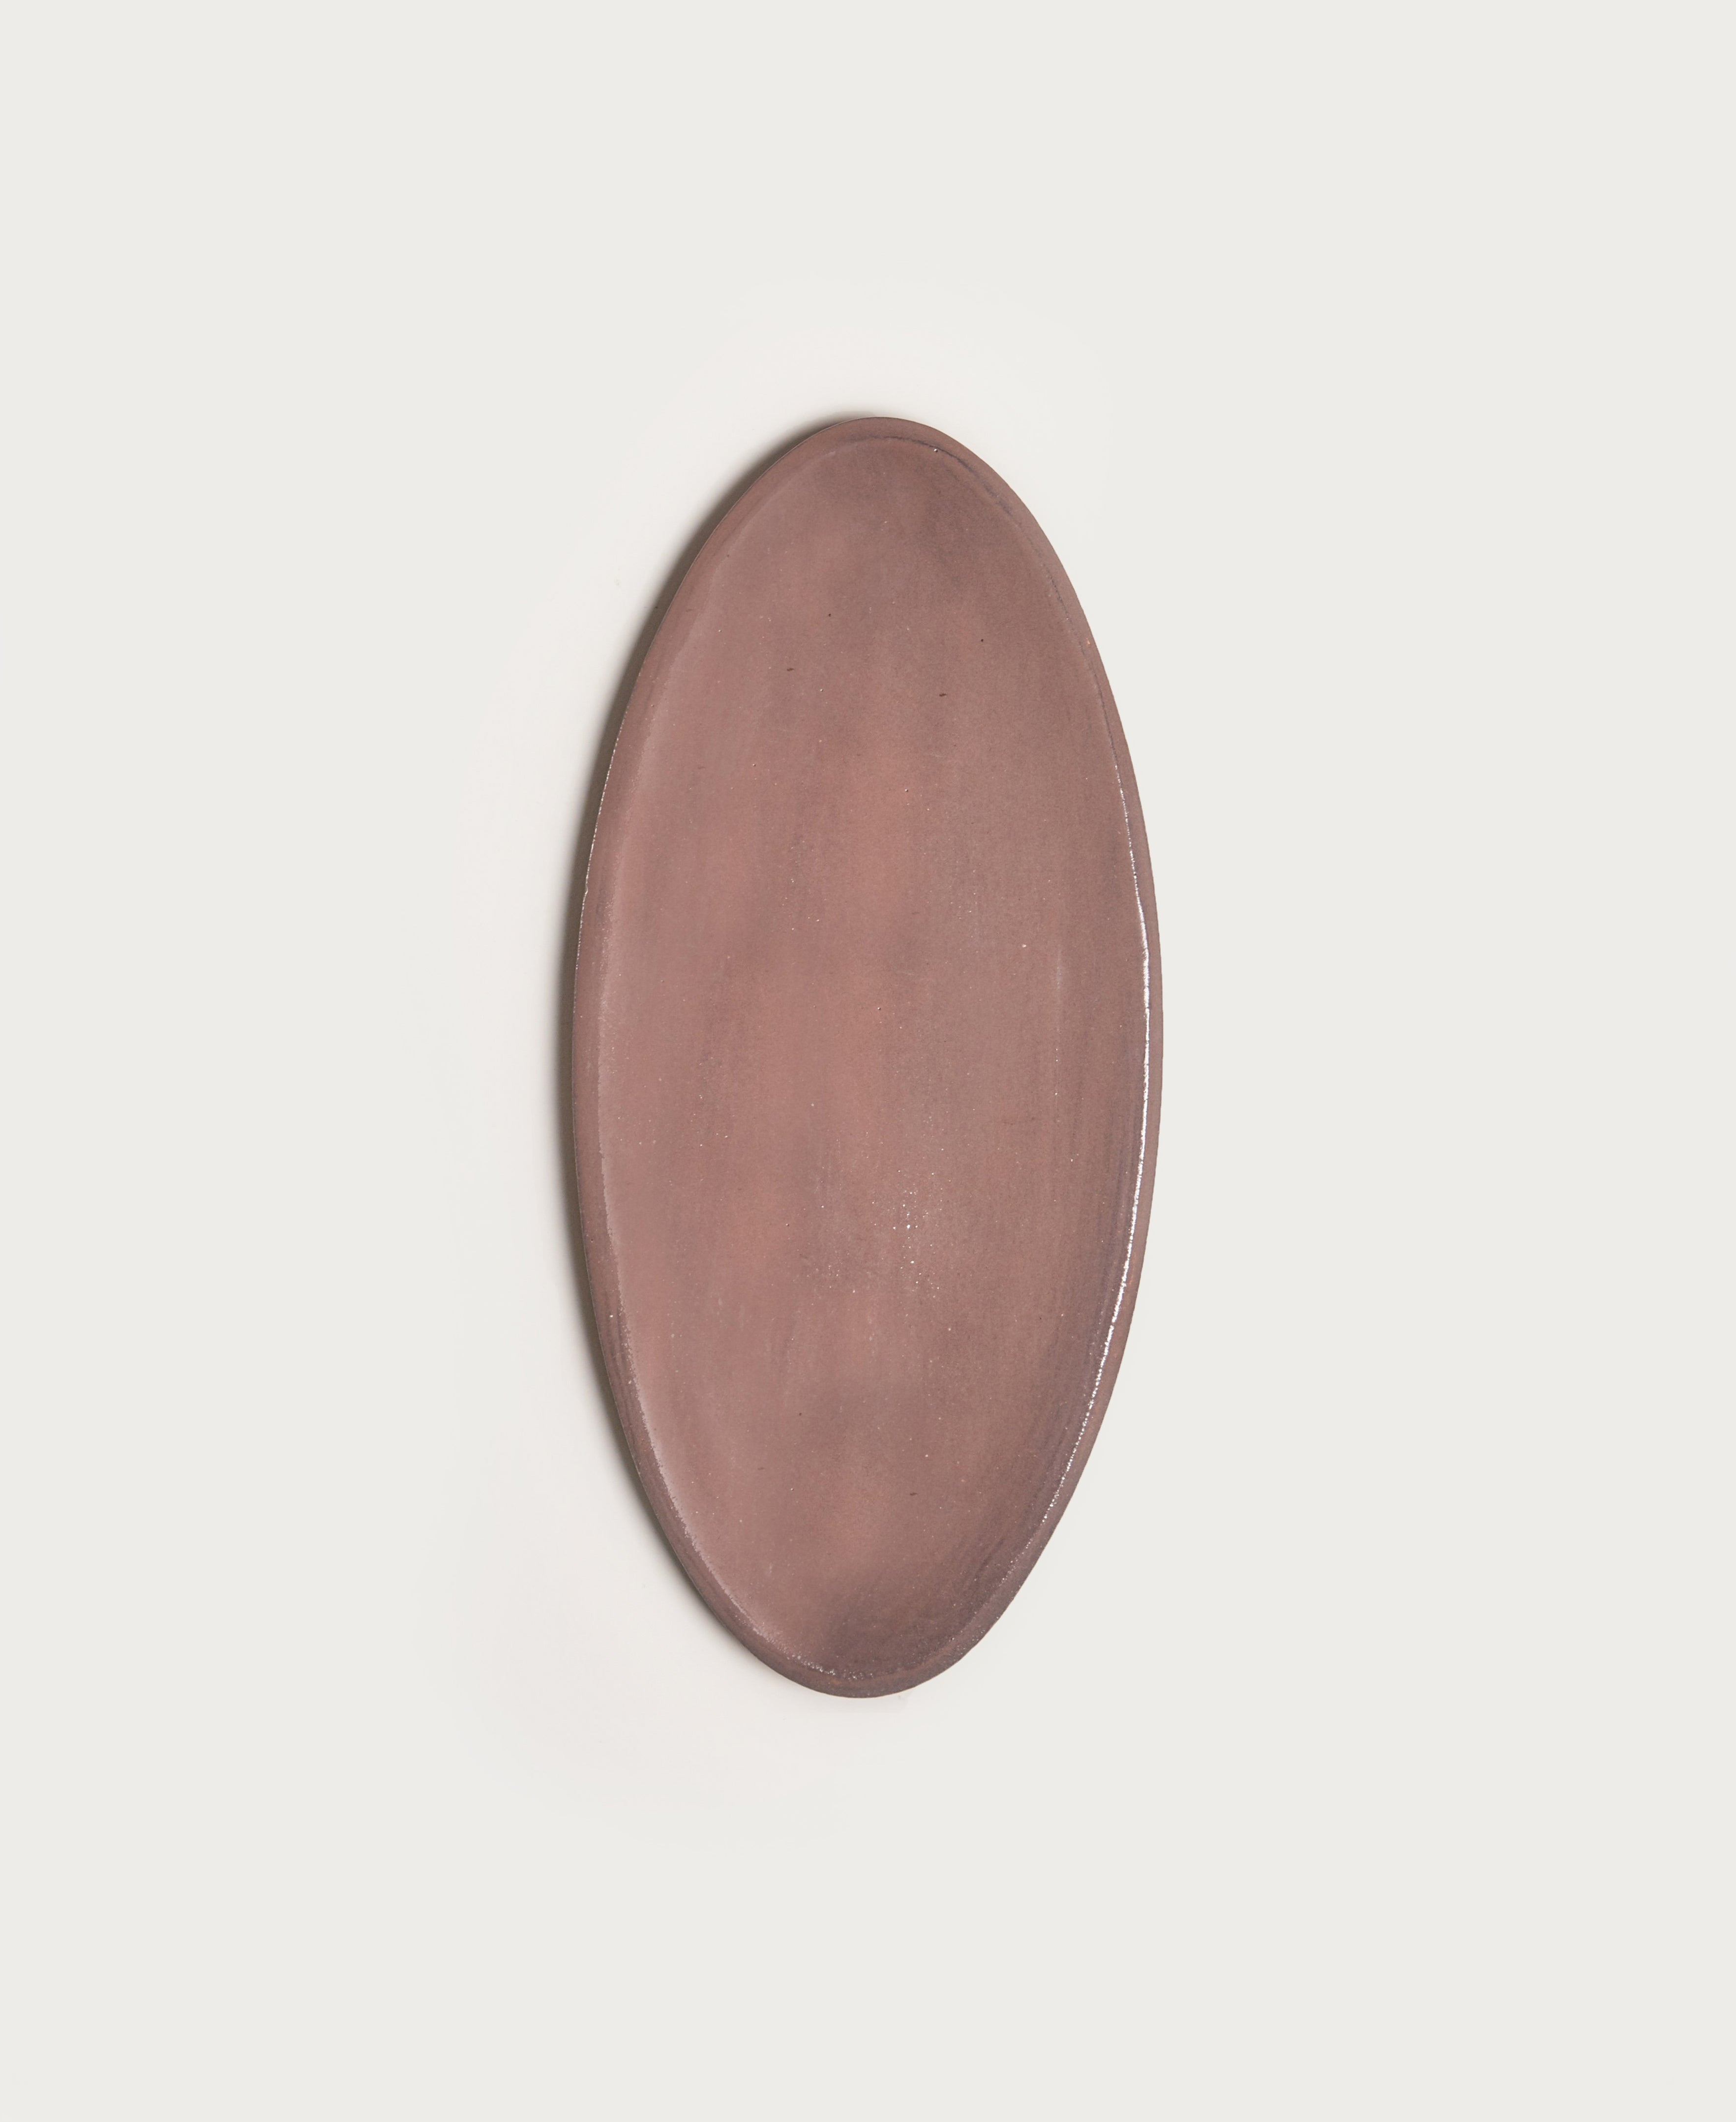   Medium Oval Platter  